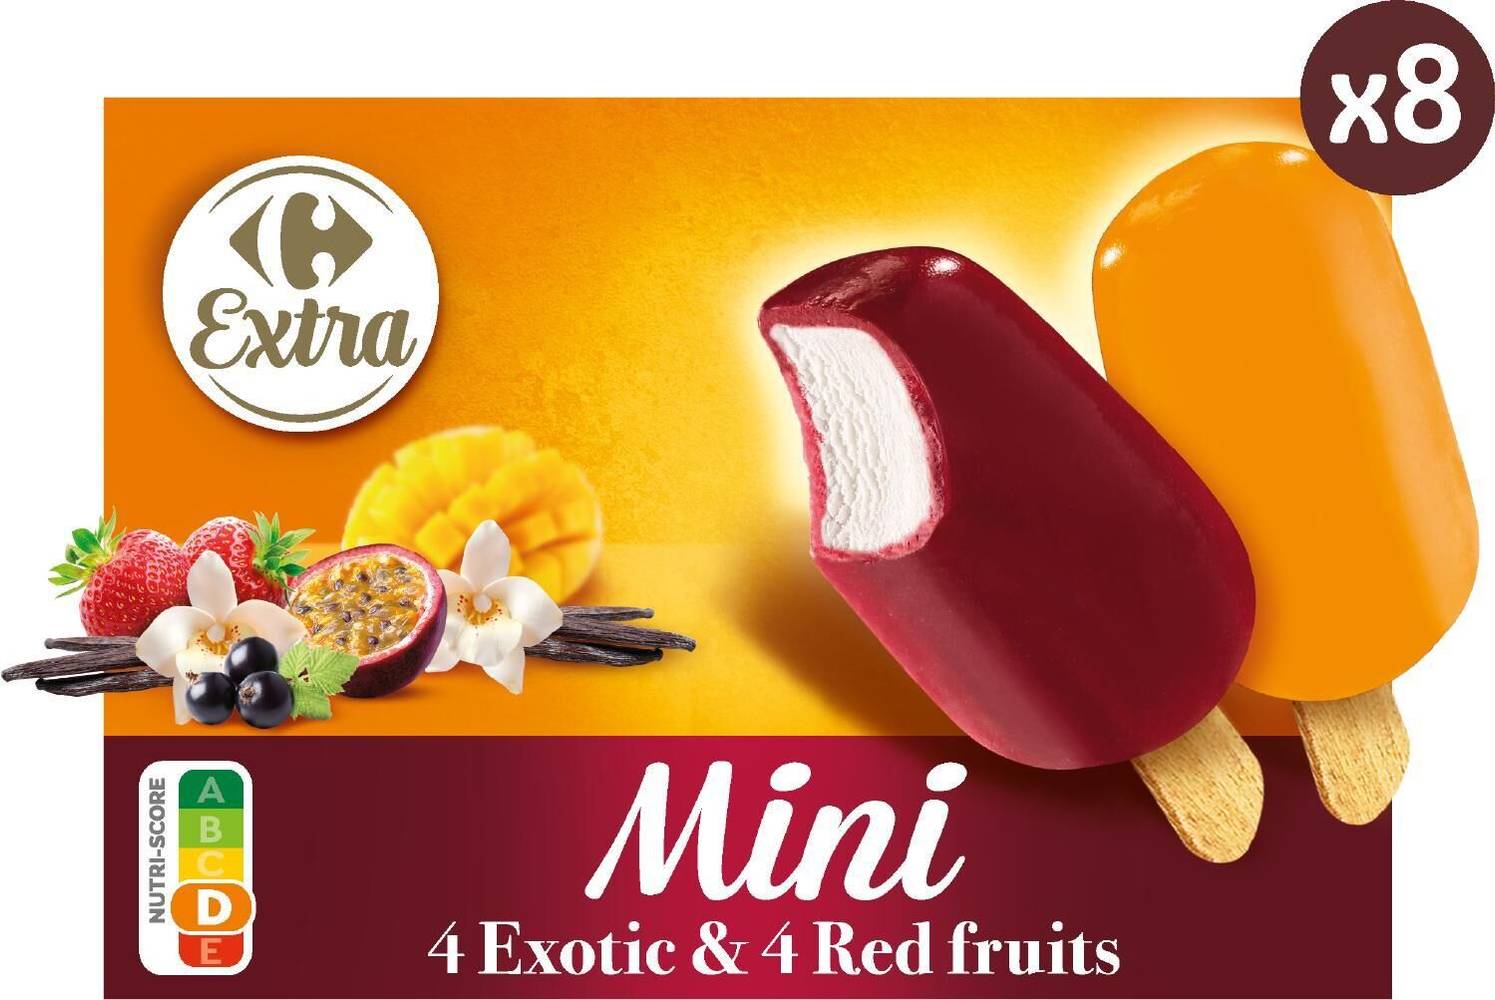 Carrefour Extra - Mini glaces à la vanille fruits exotiques et rouges (8 pièces)